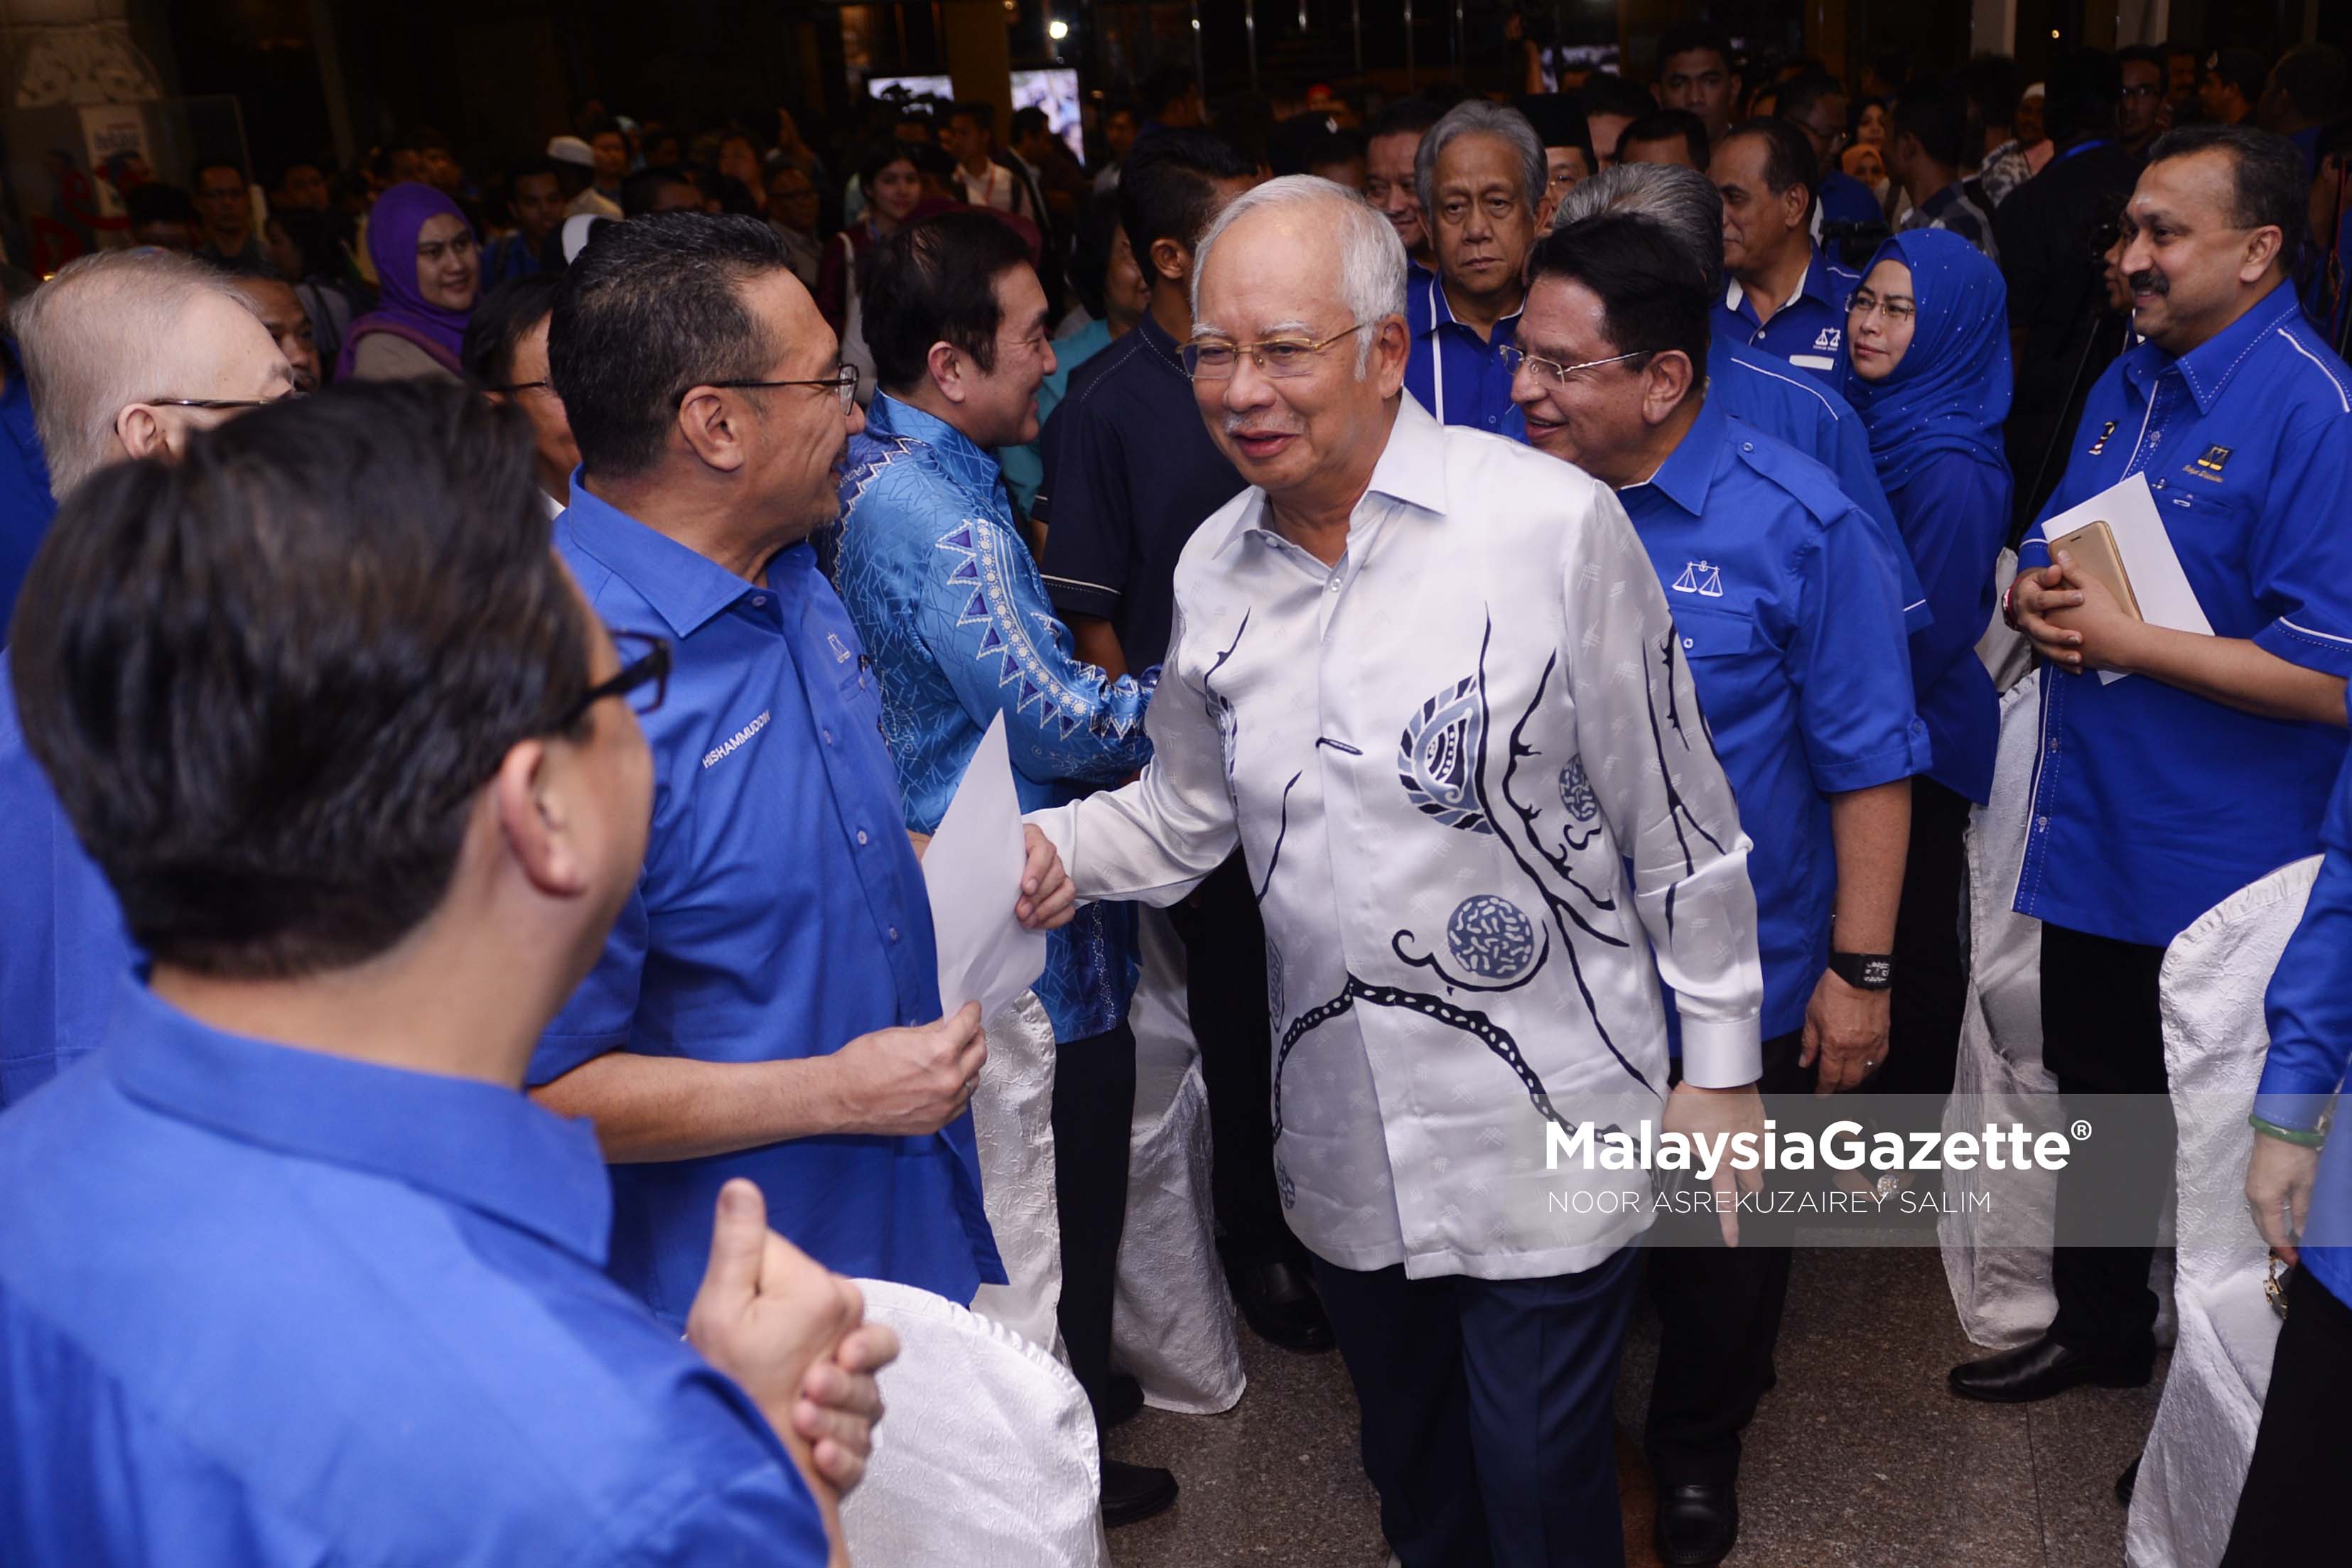 Pengerusi Barisan Nasional, Datuk Seri Najib Tun Razak diiringi Setiausaha Agung Barisan Nasional, Datuk Seri Tengku Adanan Tengku Mansor bersalaman dengan barisan kepimpinan tertinggi BN ketika hadir pada Majlis Pelancaran eRakyat di Perkarangan Menara Dato' Onn, PWTC, Kuala Lumpur. foto NOOR ASREKUZAIREY SALIM, 29 MAC 2017